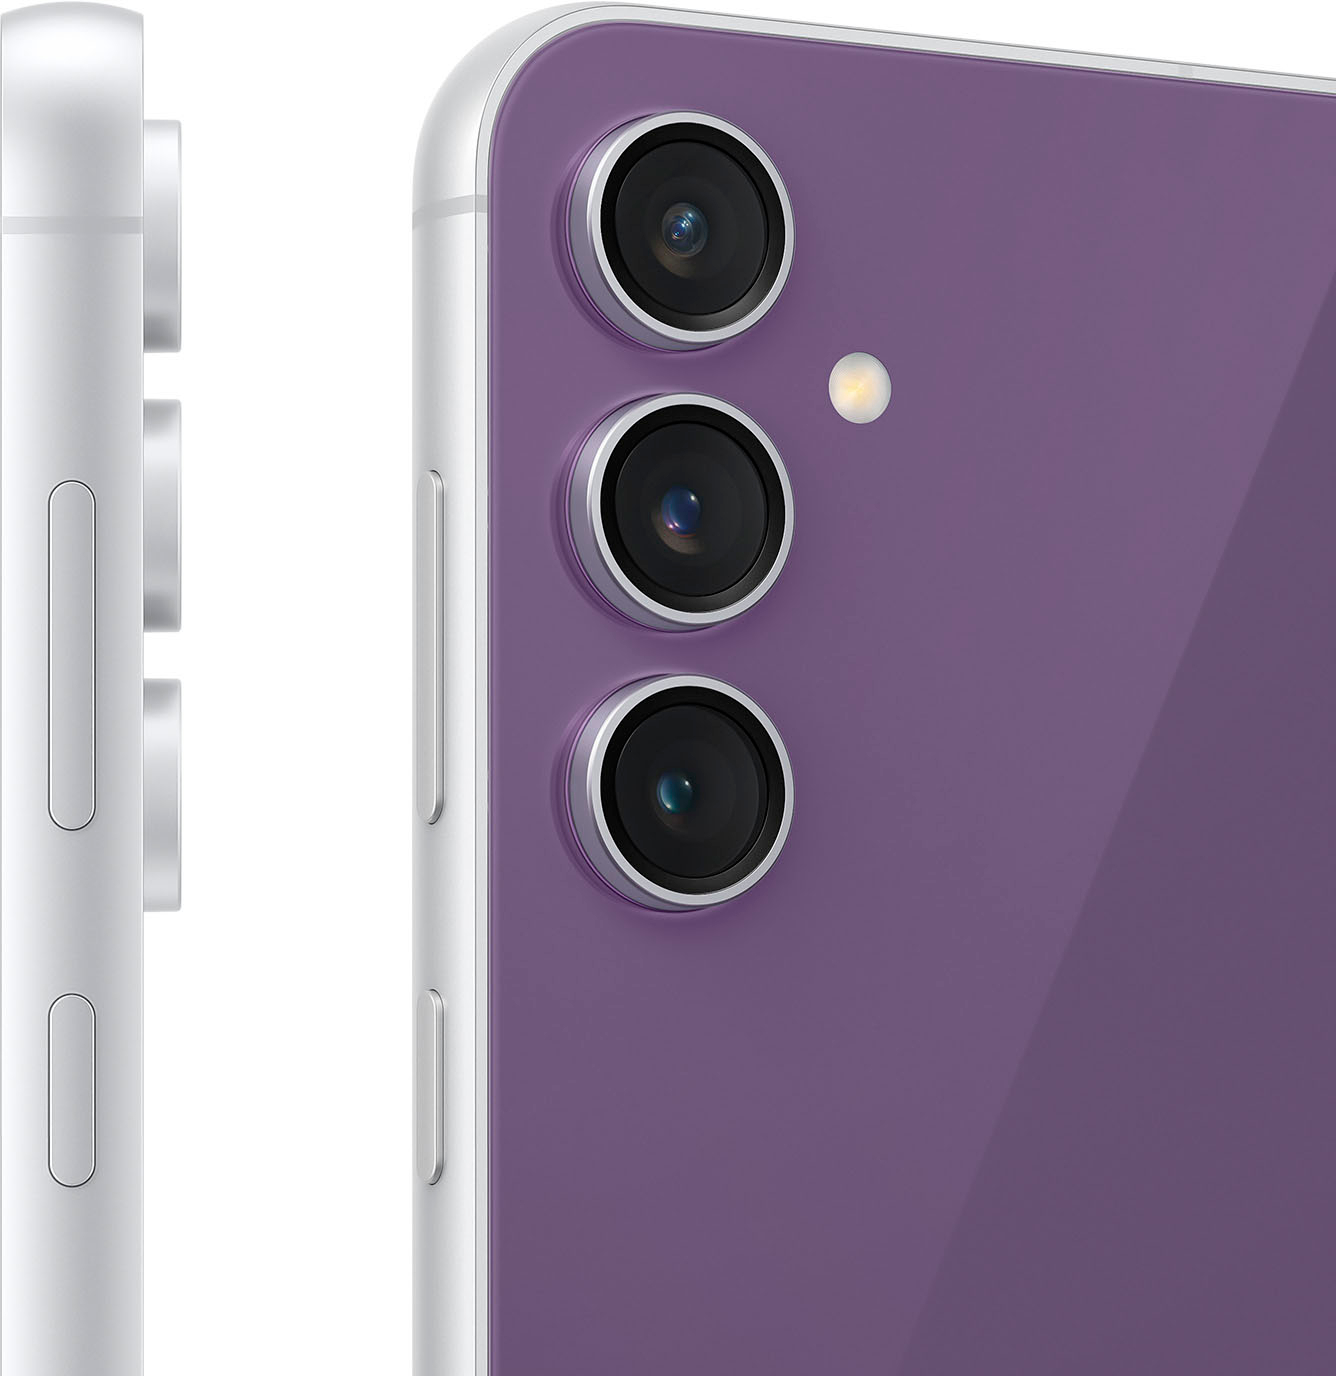 Galaxy S23 FE 8GB/128GB (Purple) - Display, Camera & Full Specs